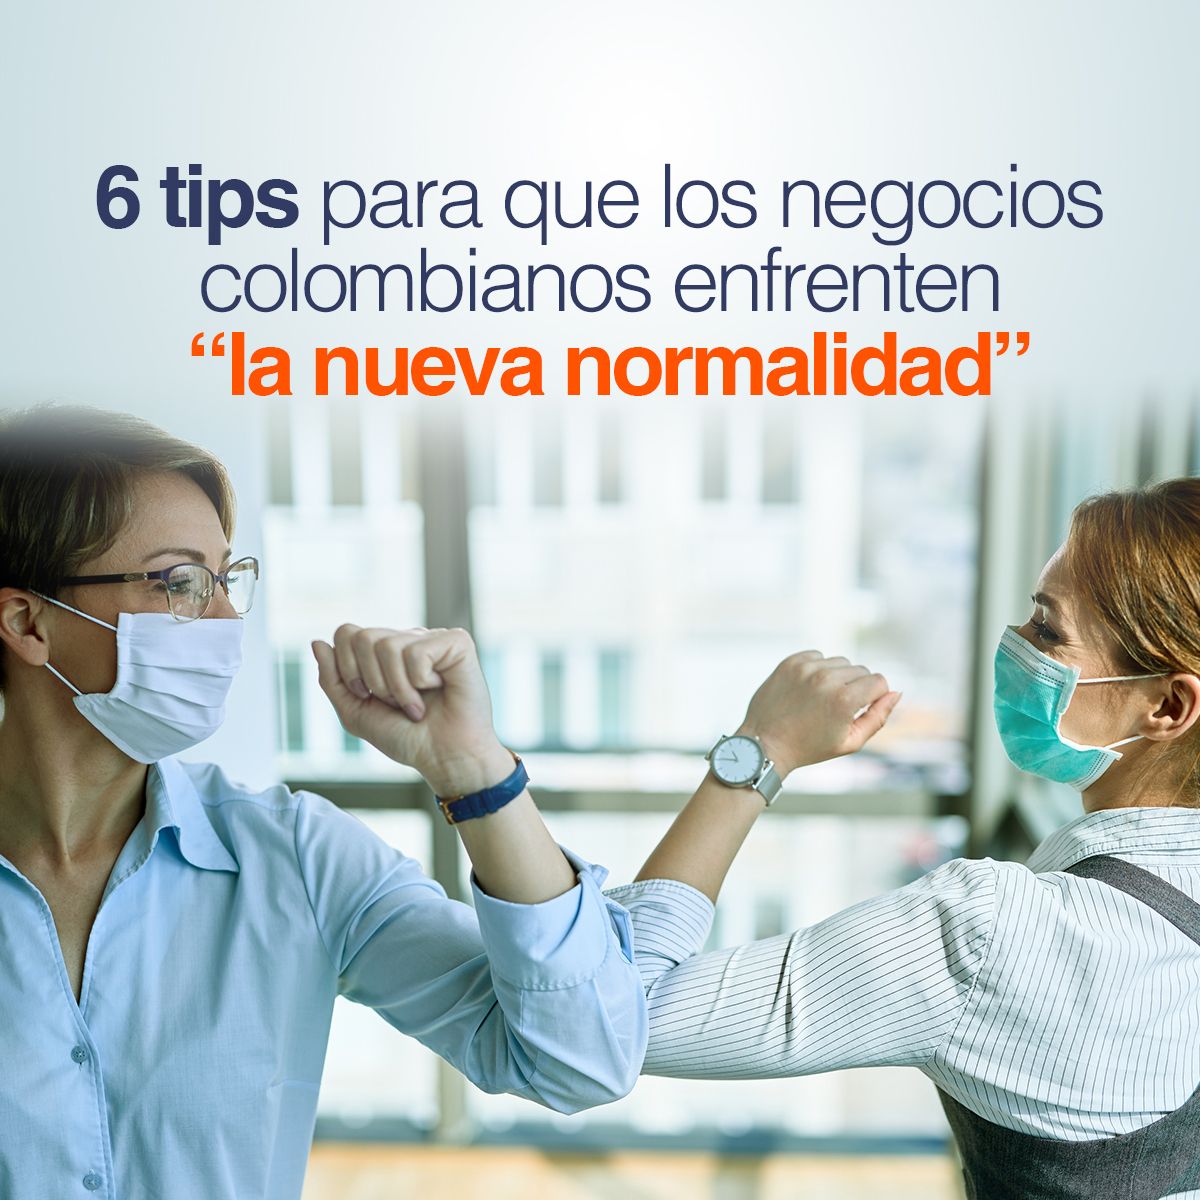 6 tips para que los negocios colombianos enfrenten 